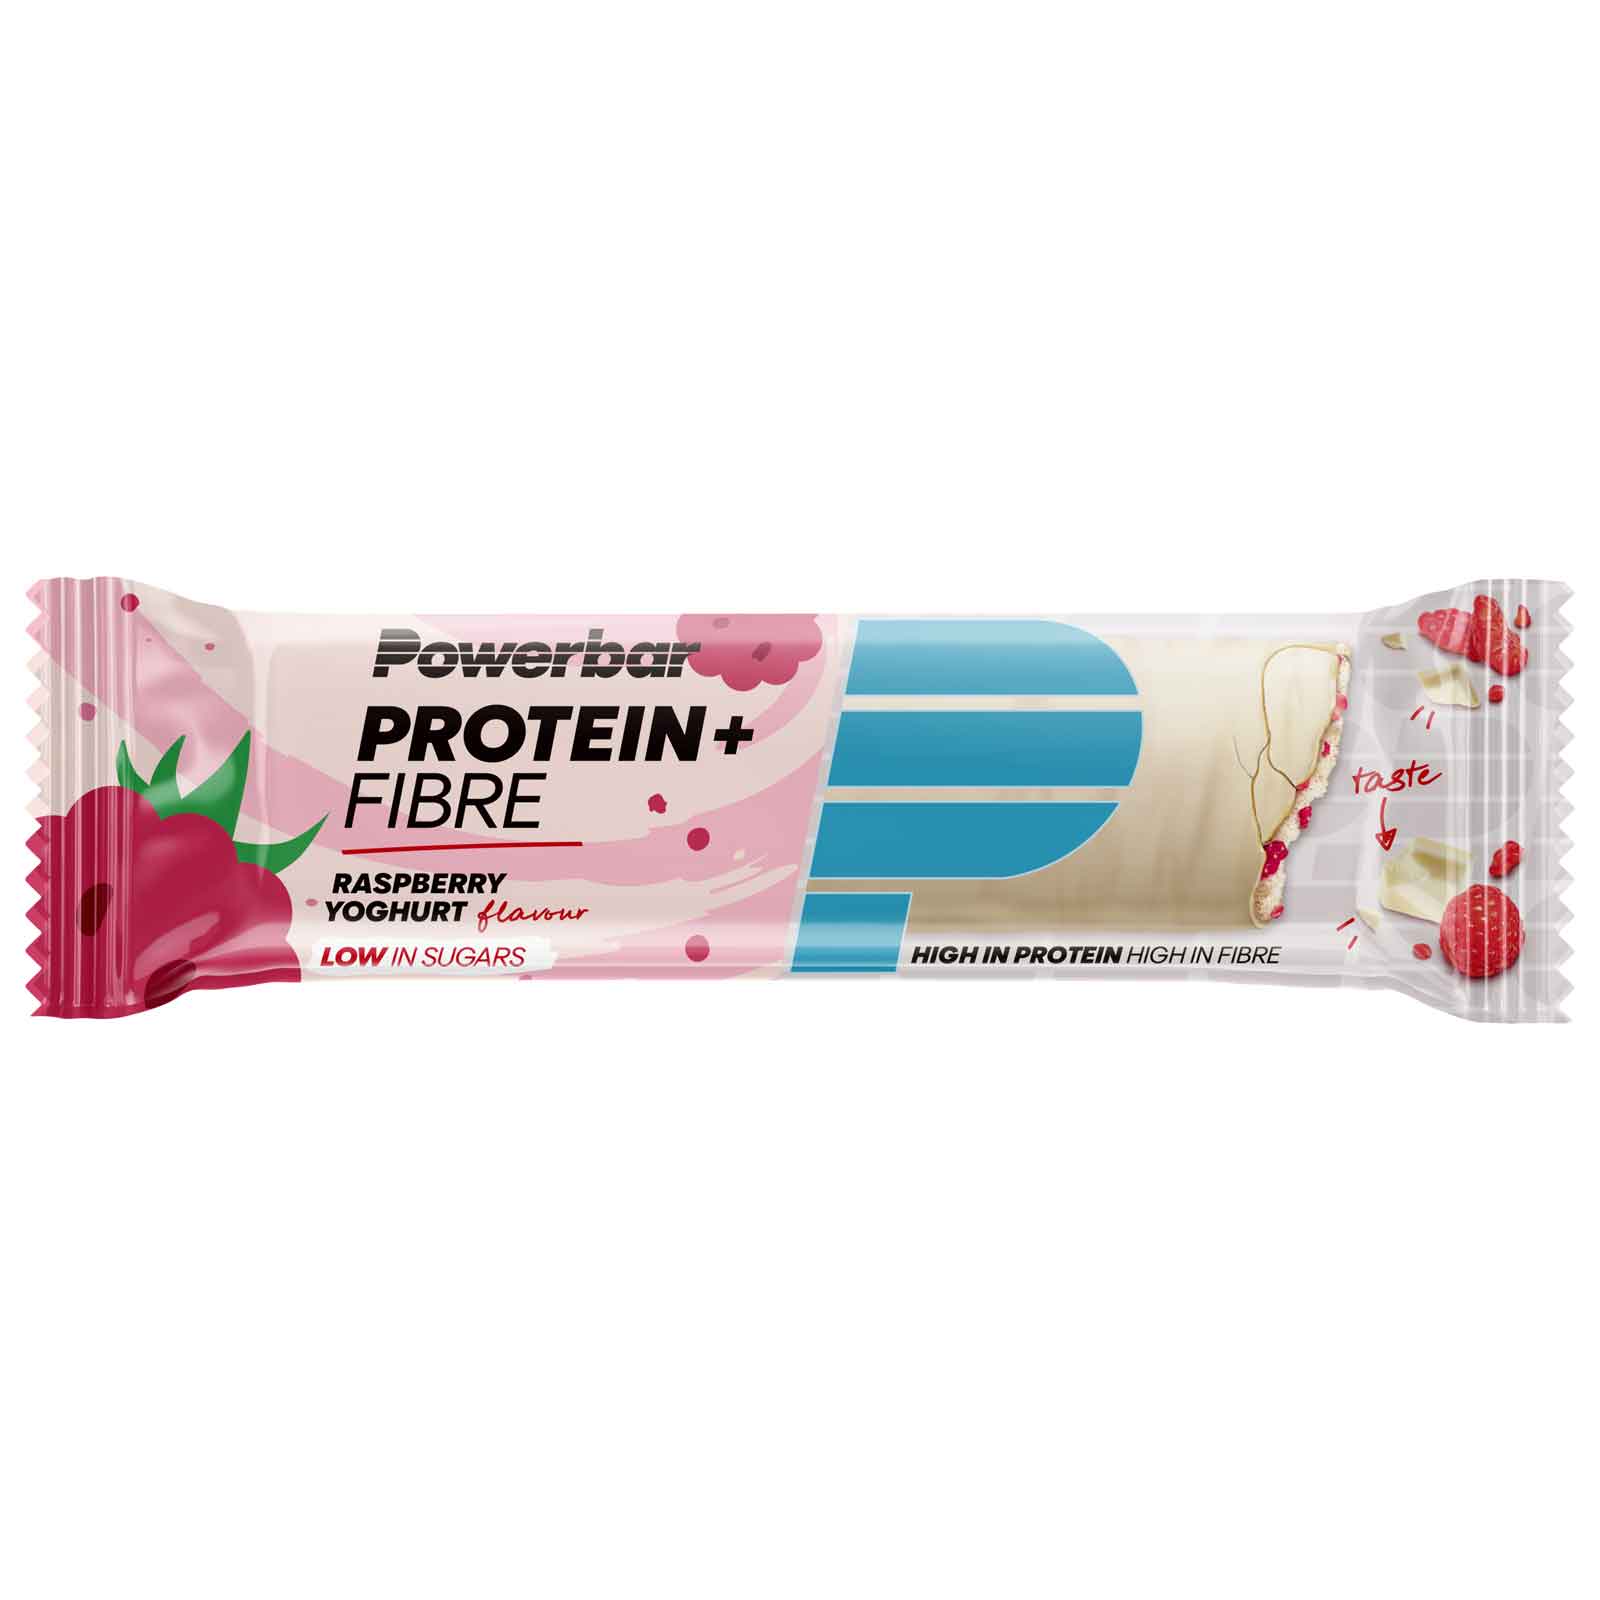 Produktbild von Powerbar Protein Plus Fibre - Eiweiß-Riegel - 35g